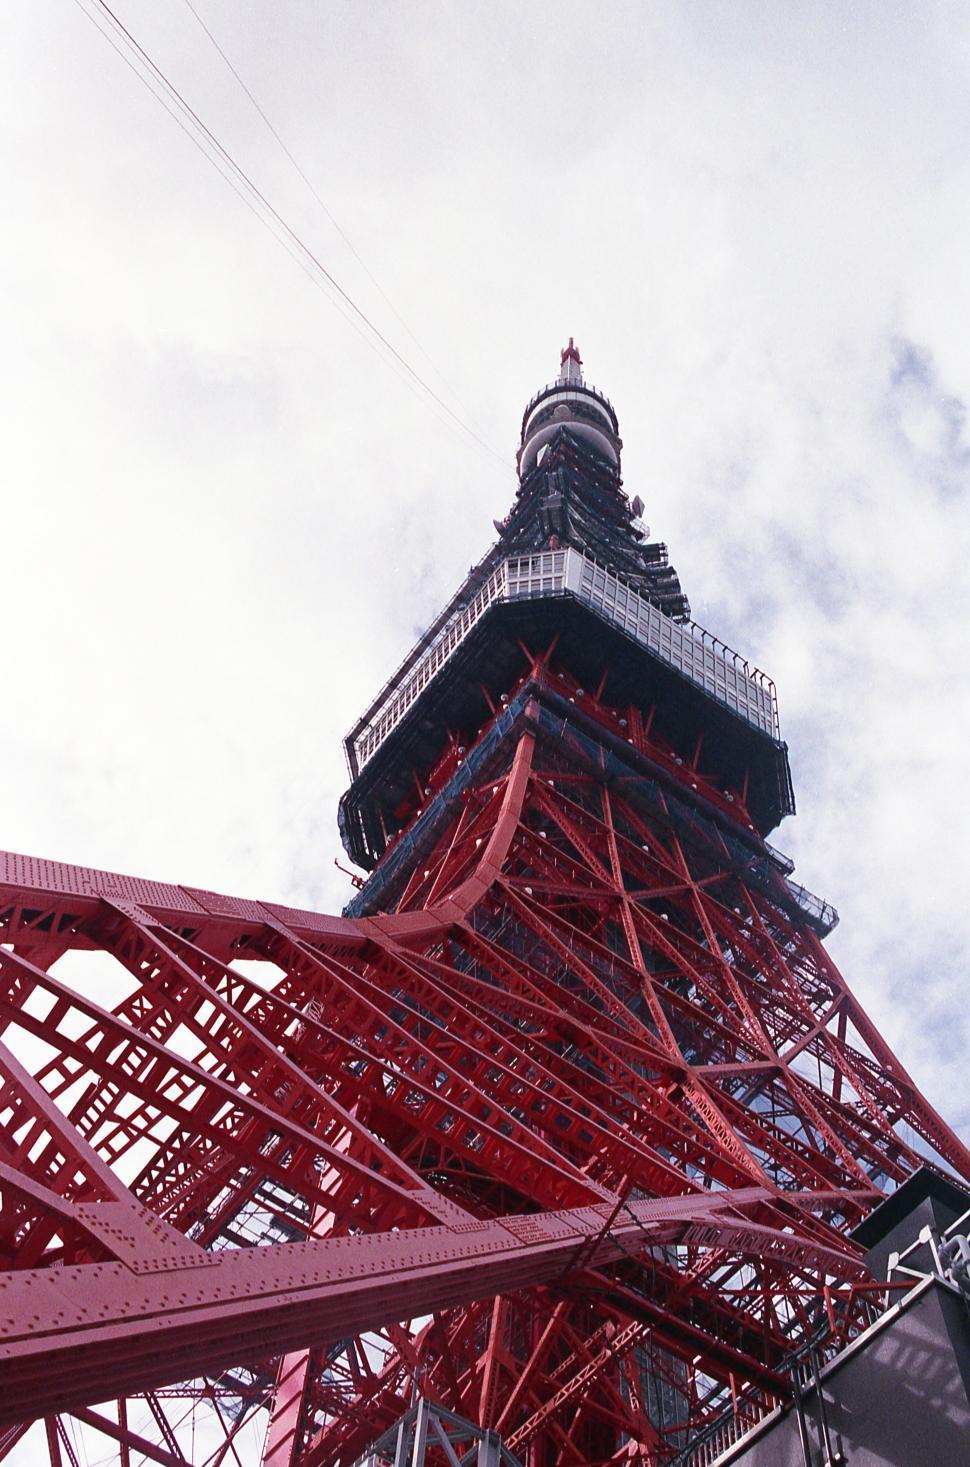 Free Image of Tokyo Tower - Tokyo, Japan 